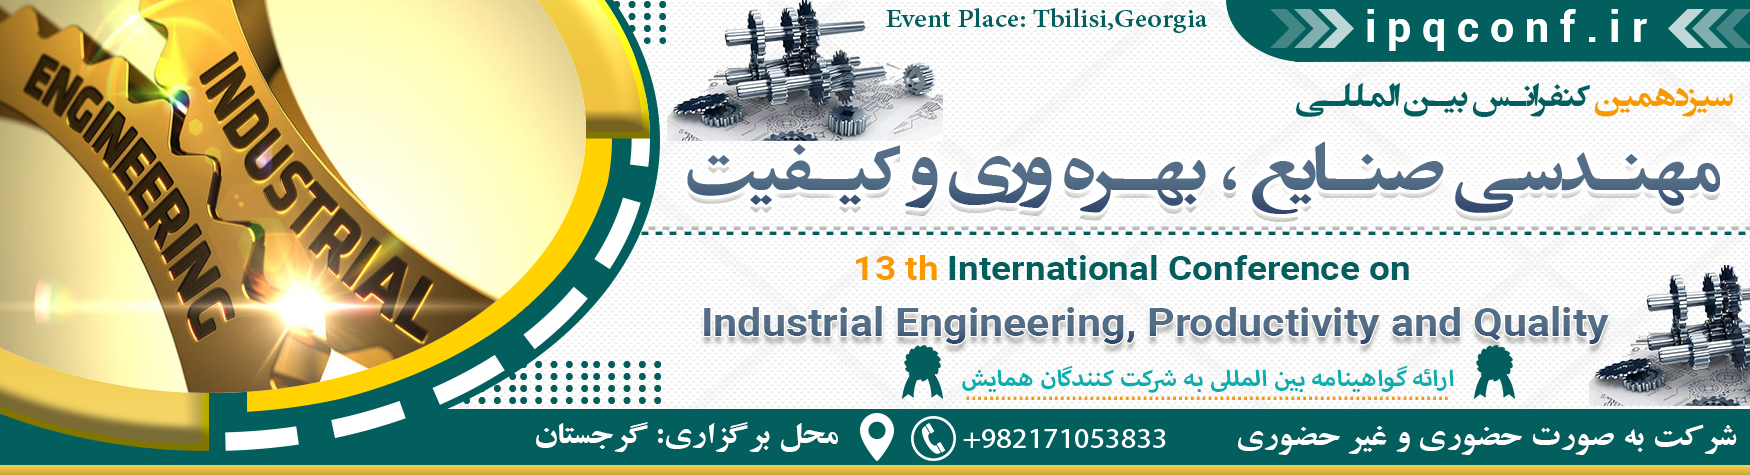 کنفرانس بین المللی مهندسی صنایع ، بهره وری و کیفیت